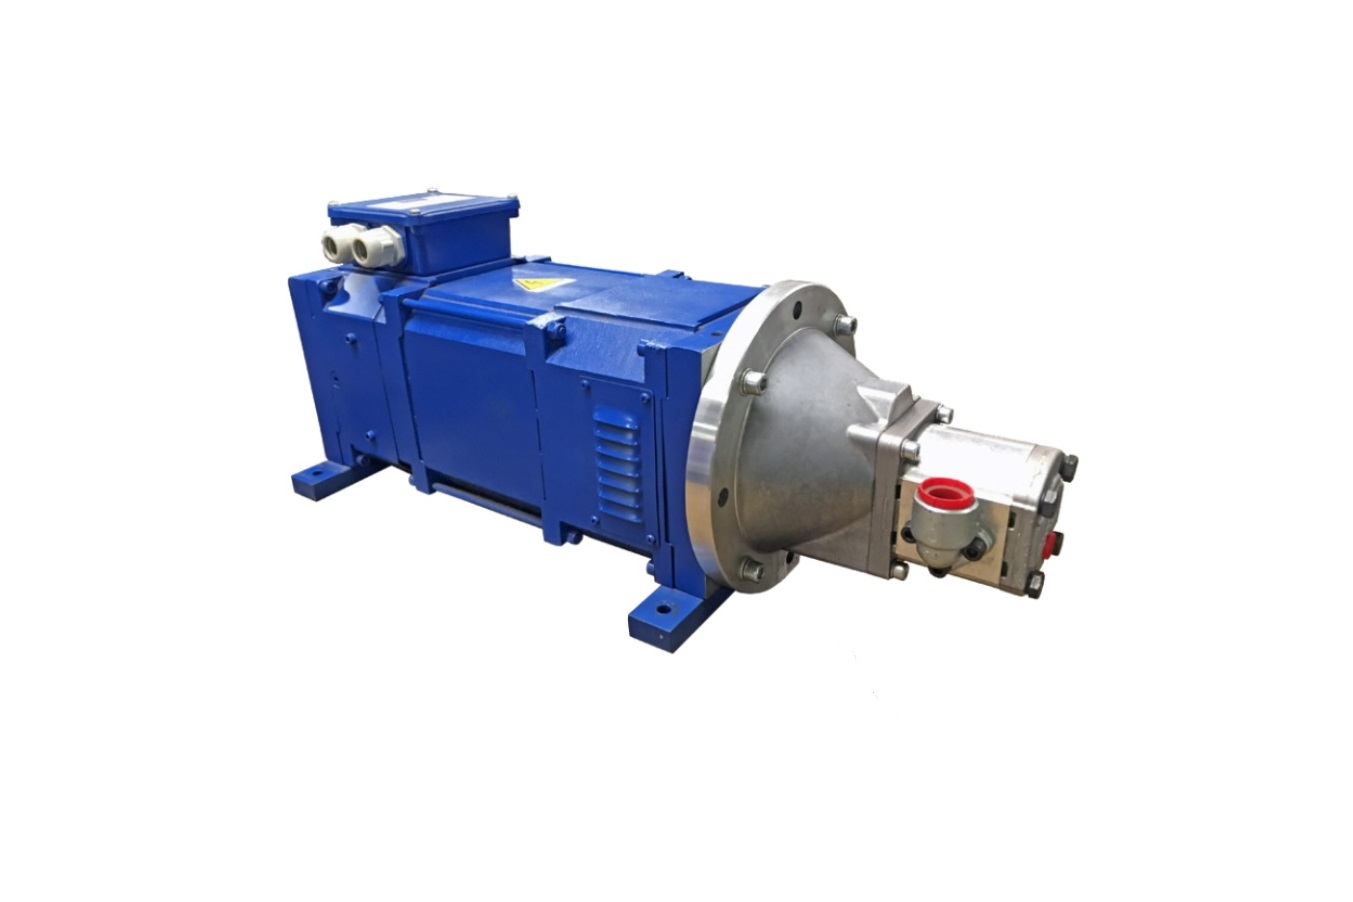 Blue hydraulic generator system